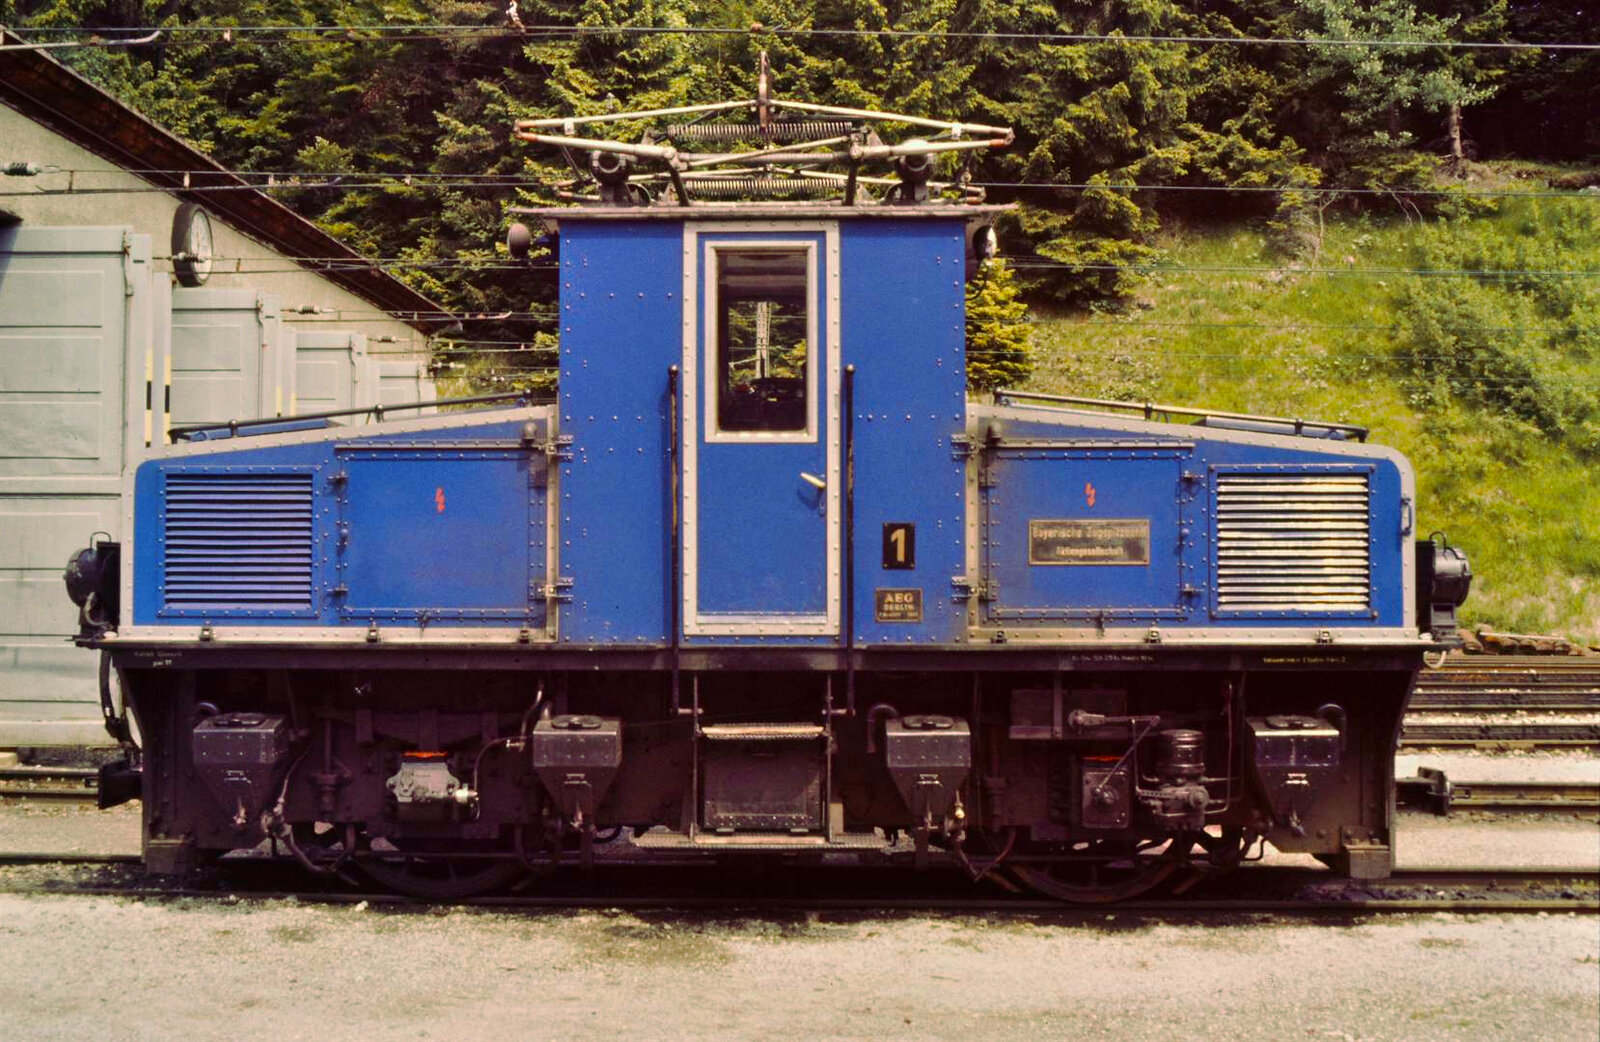 Tallok 1 der Bayerischen Zugspitzbahn vor dem Bw Grainau.  Datum: 30.08.1984